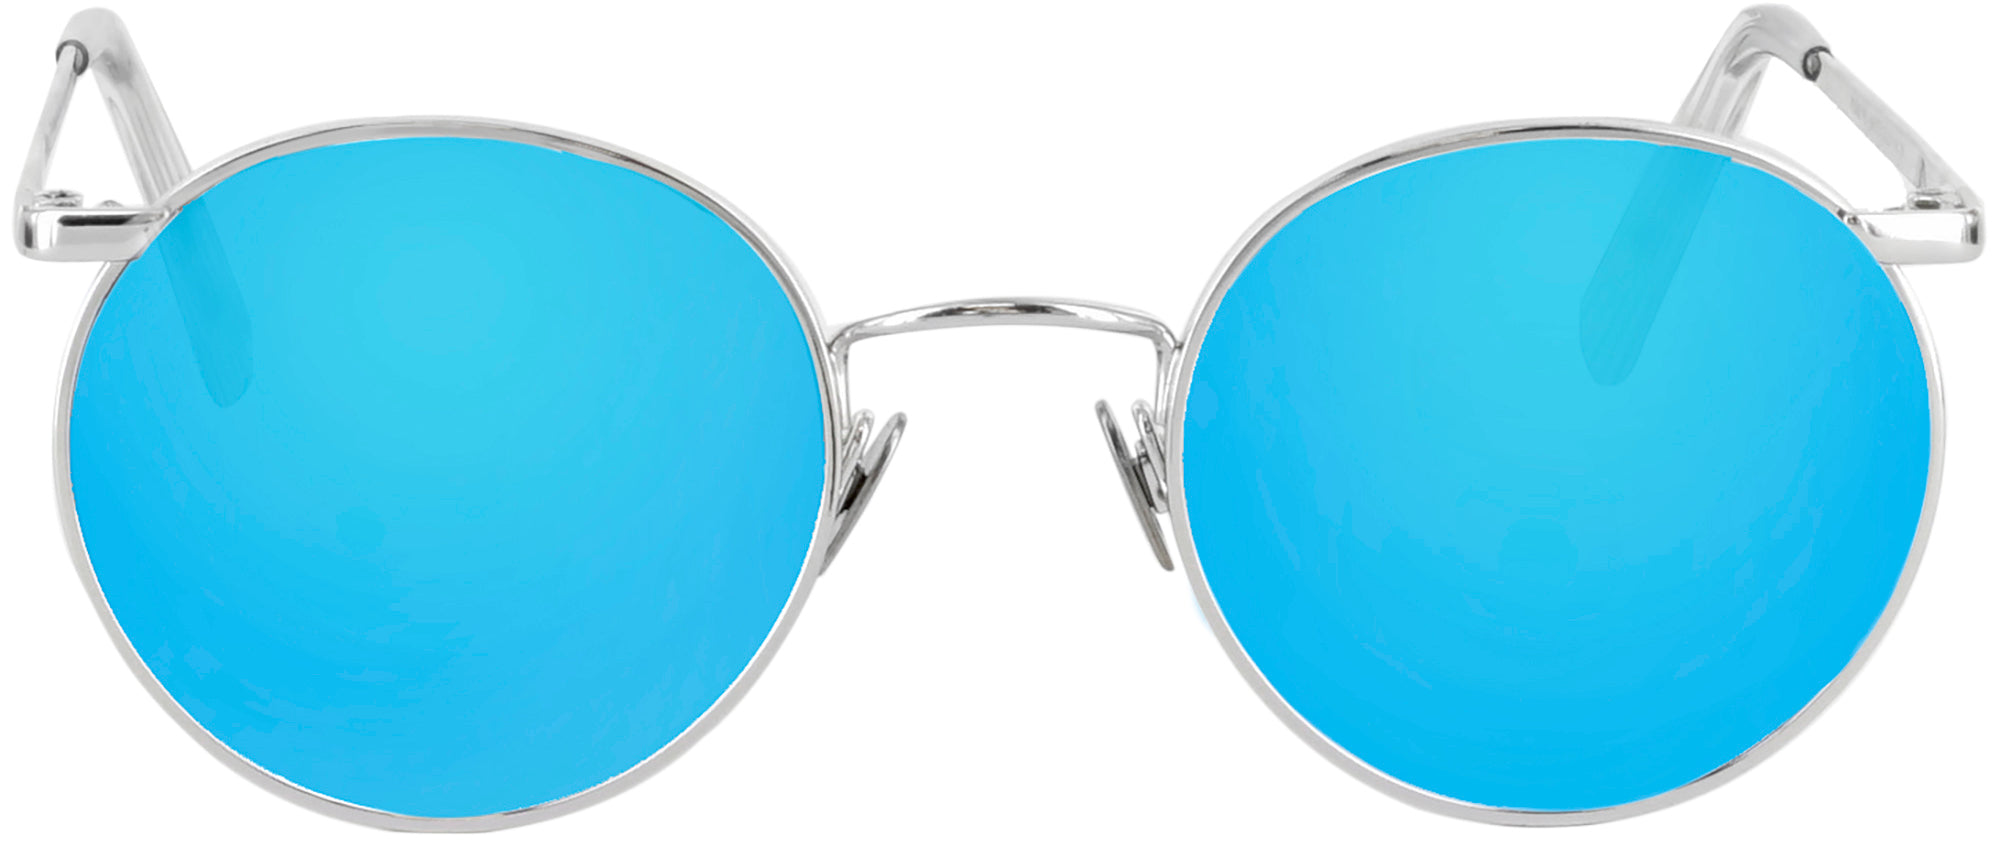 P3 White Gold Progressive Reading Sunglasses-Polarized with Mirror